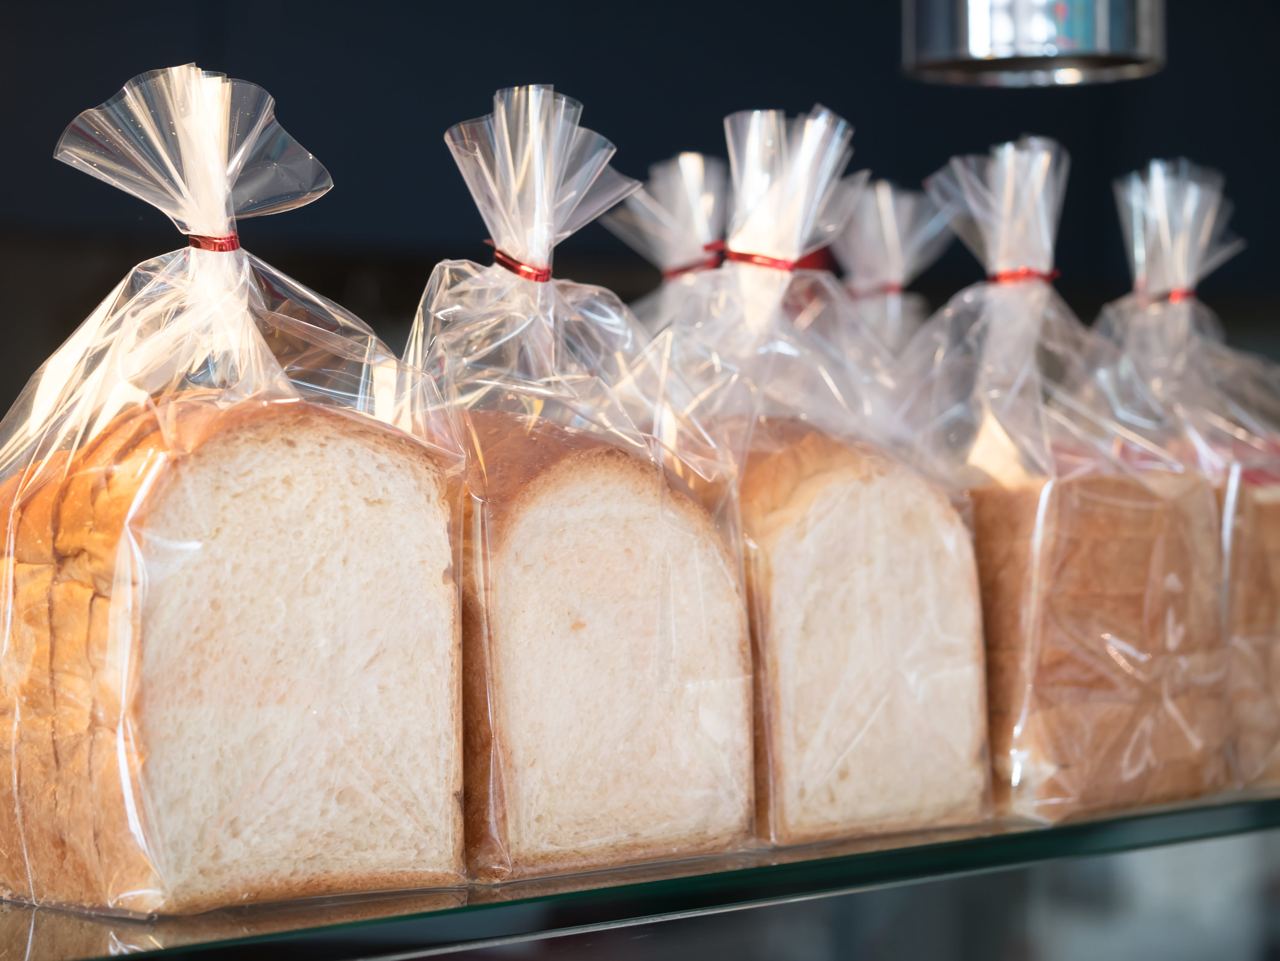 Полуфабрикат хлеба. Хлеб в упаковке. Упаковка замороженных хлебобулочных изделий. Упаковочные материалы для хлебобулочных изделий. Упаковка хлебобулочных изделий на производстве.